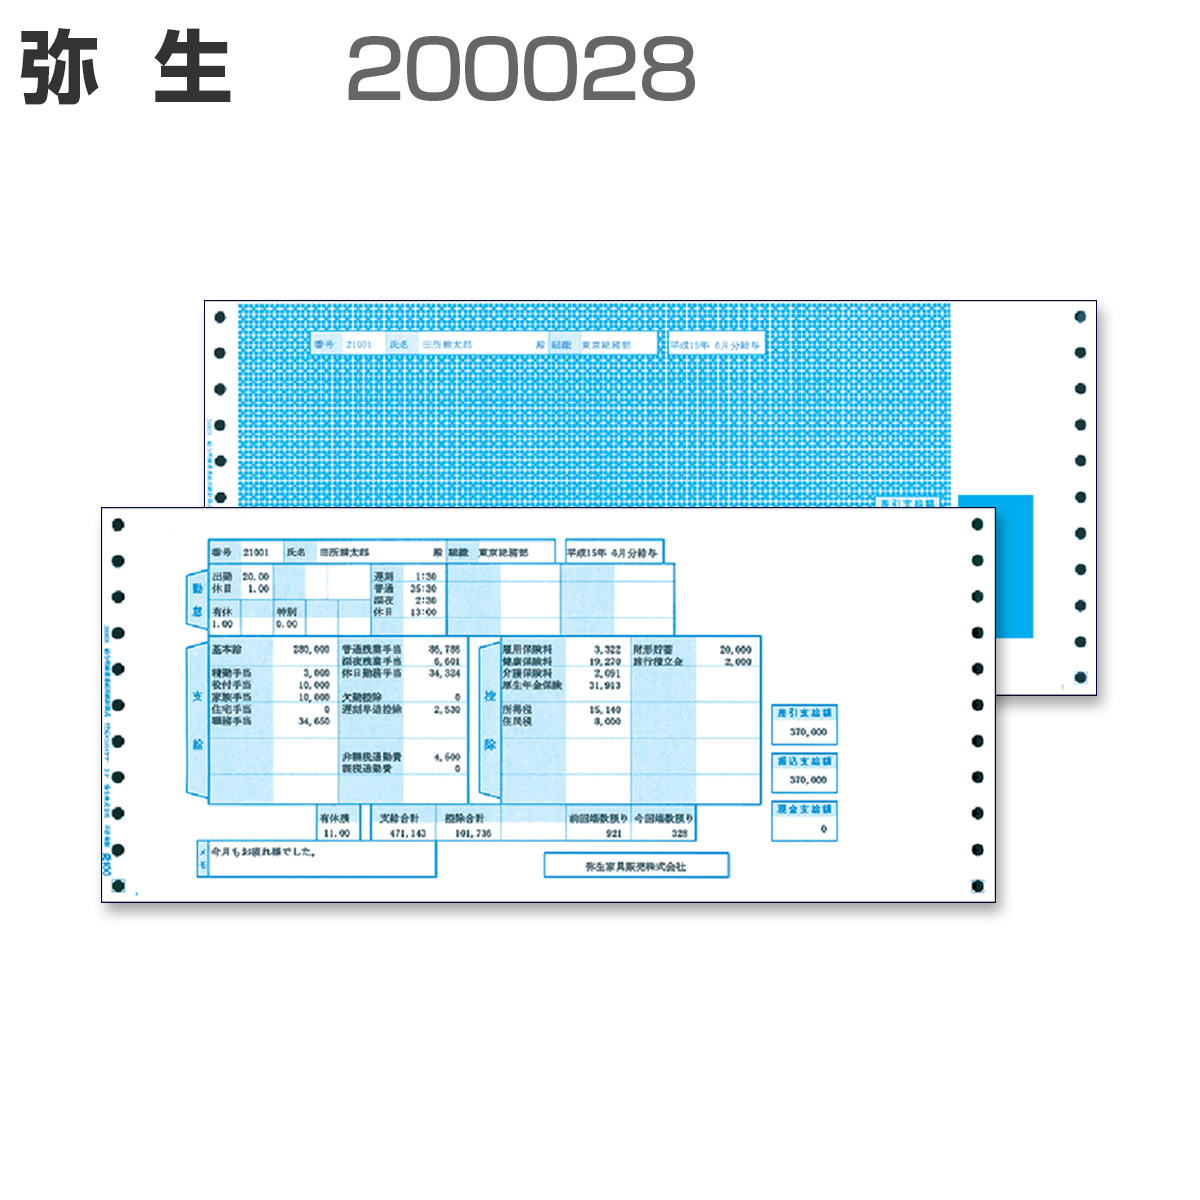 弥生 200028 給与明細書 【封筒式】 (500セット)